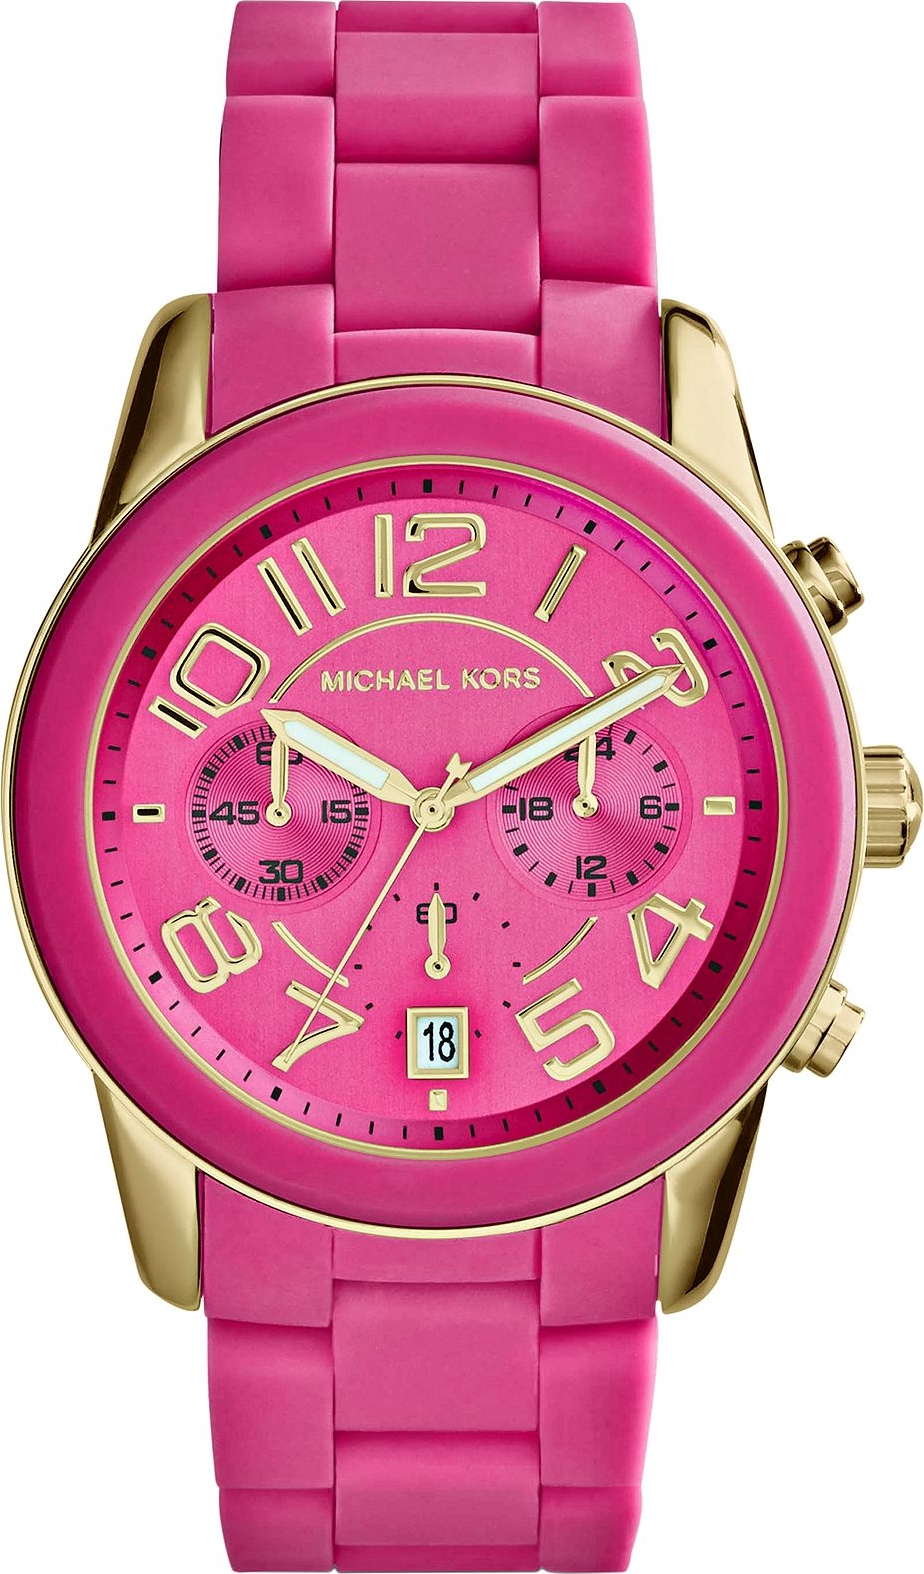 Michael Kors MK5890 Mercer Pink Women's Watch 42mm